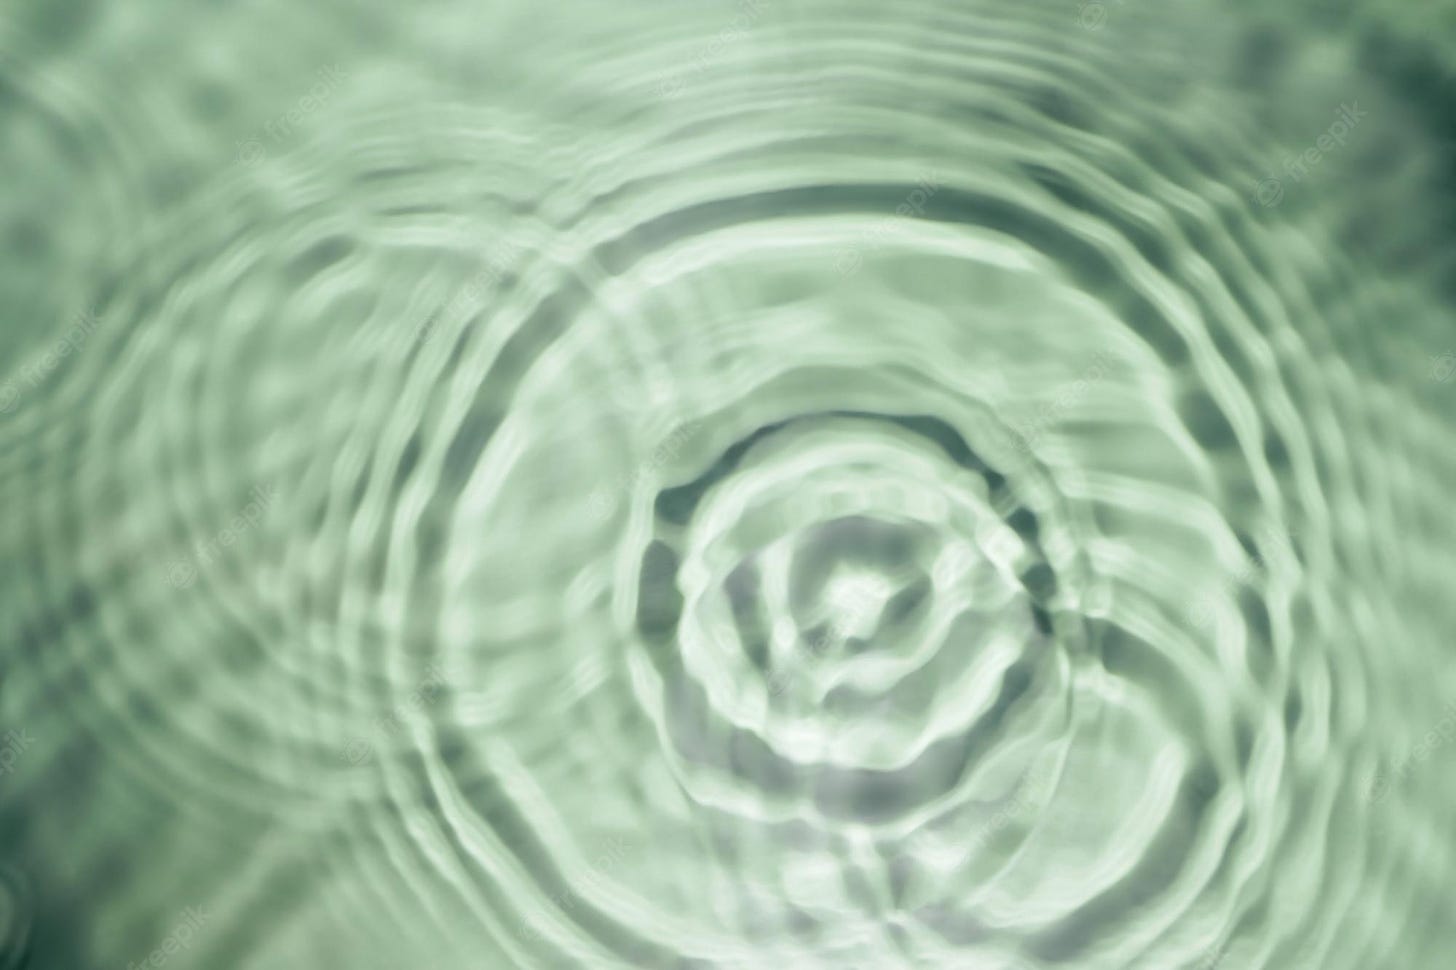 Gel de agua verde transparente ondulado desenfocado con círculos  concéntricos en expansión en la superficie de una gota caída con olas |  Foto Premium